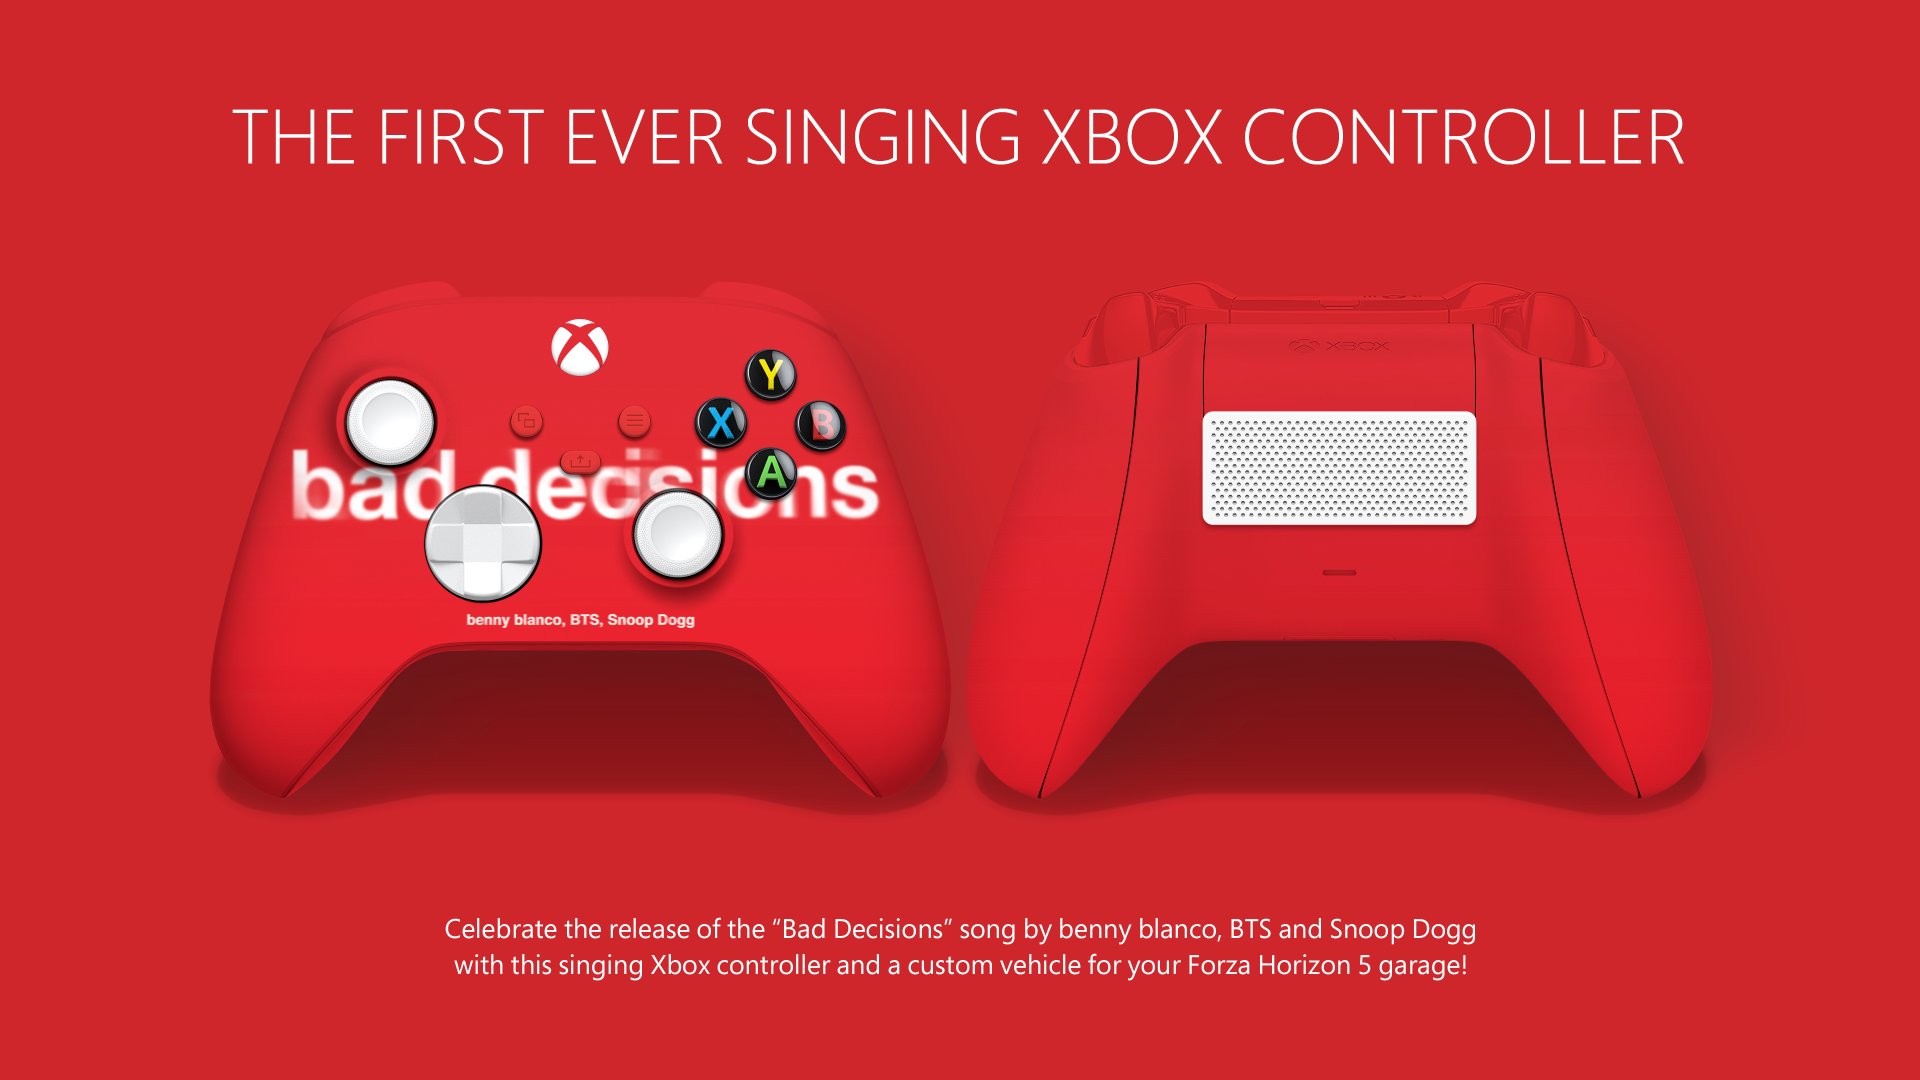 Der erste singende Xbox Controller: Featuring Benny Blanco, BTS und Snoop Dogg: HERO